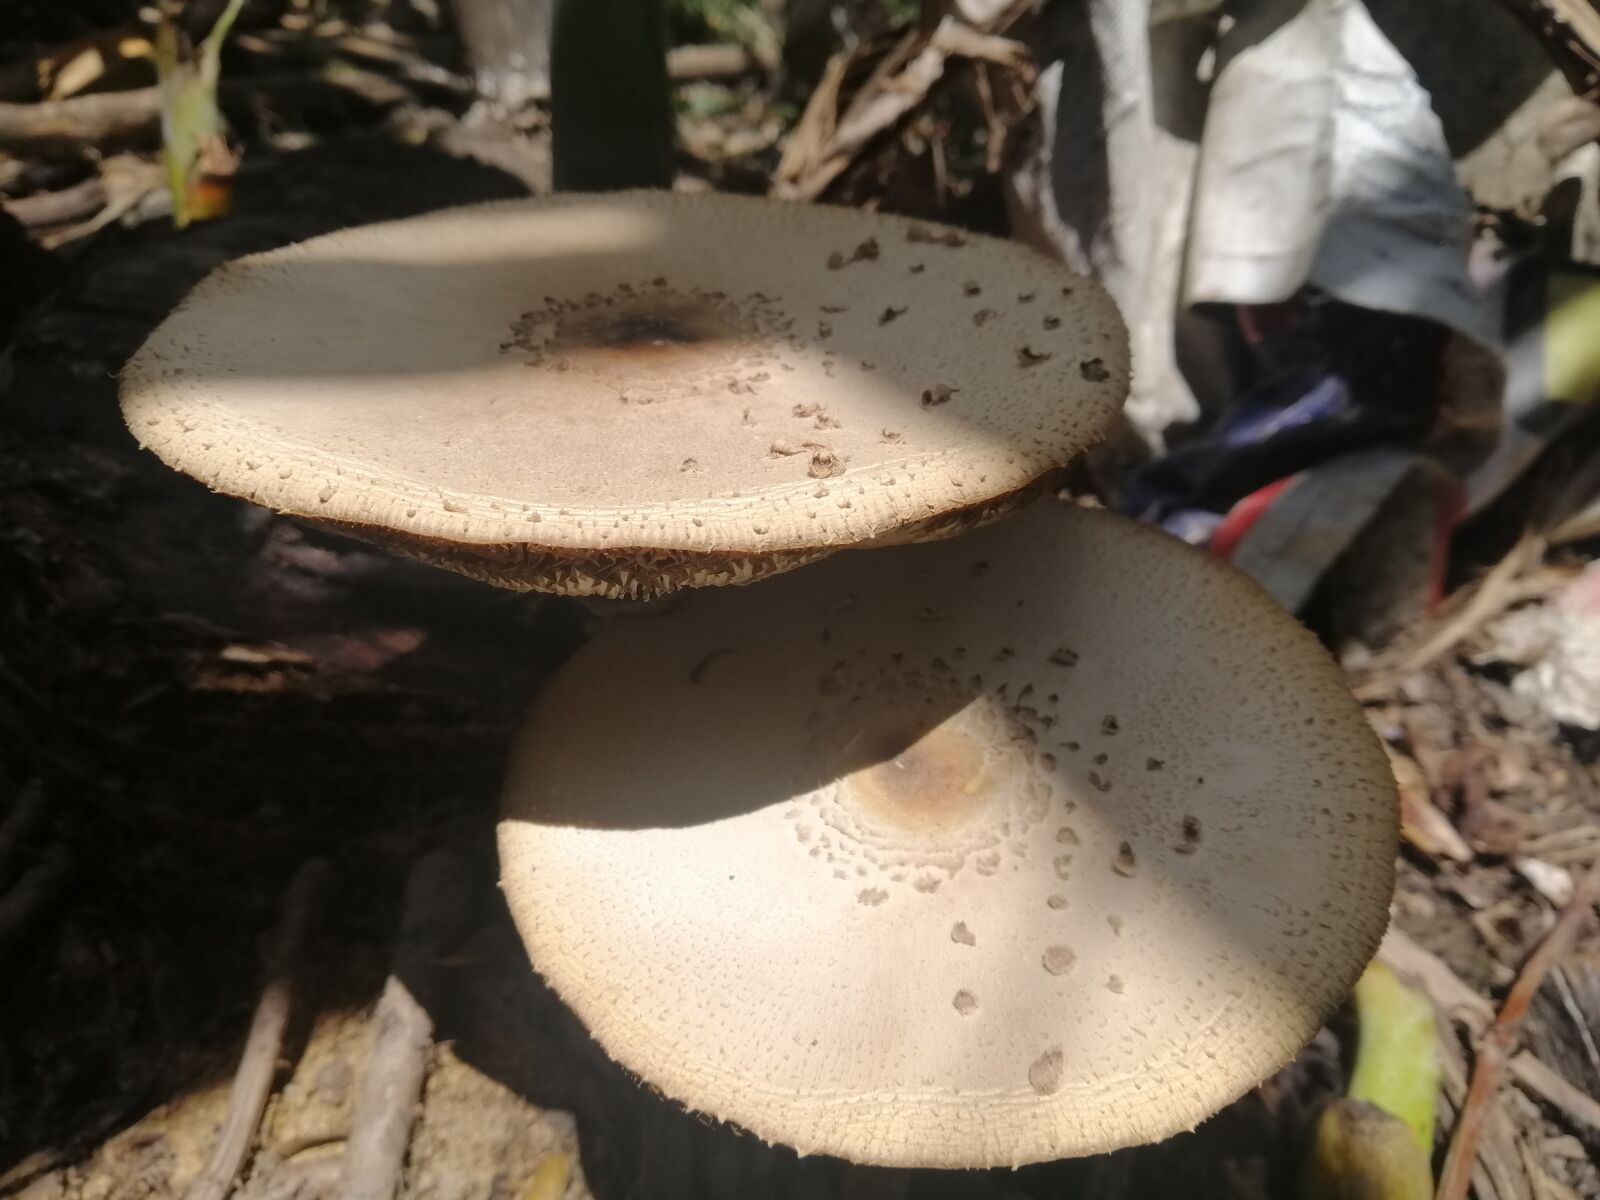 HUAWEI nova 3i sample photo. Mushrooms, fungus, nature photography